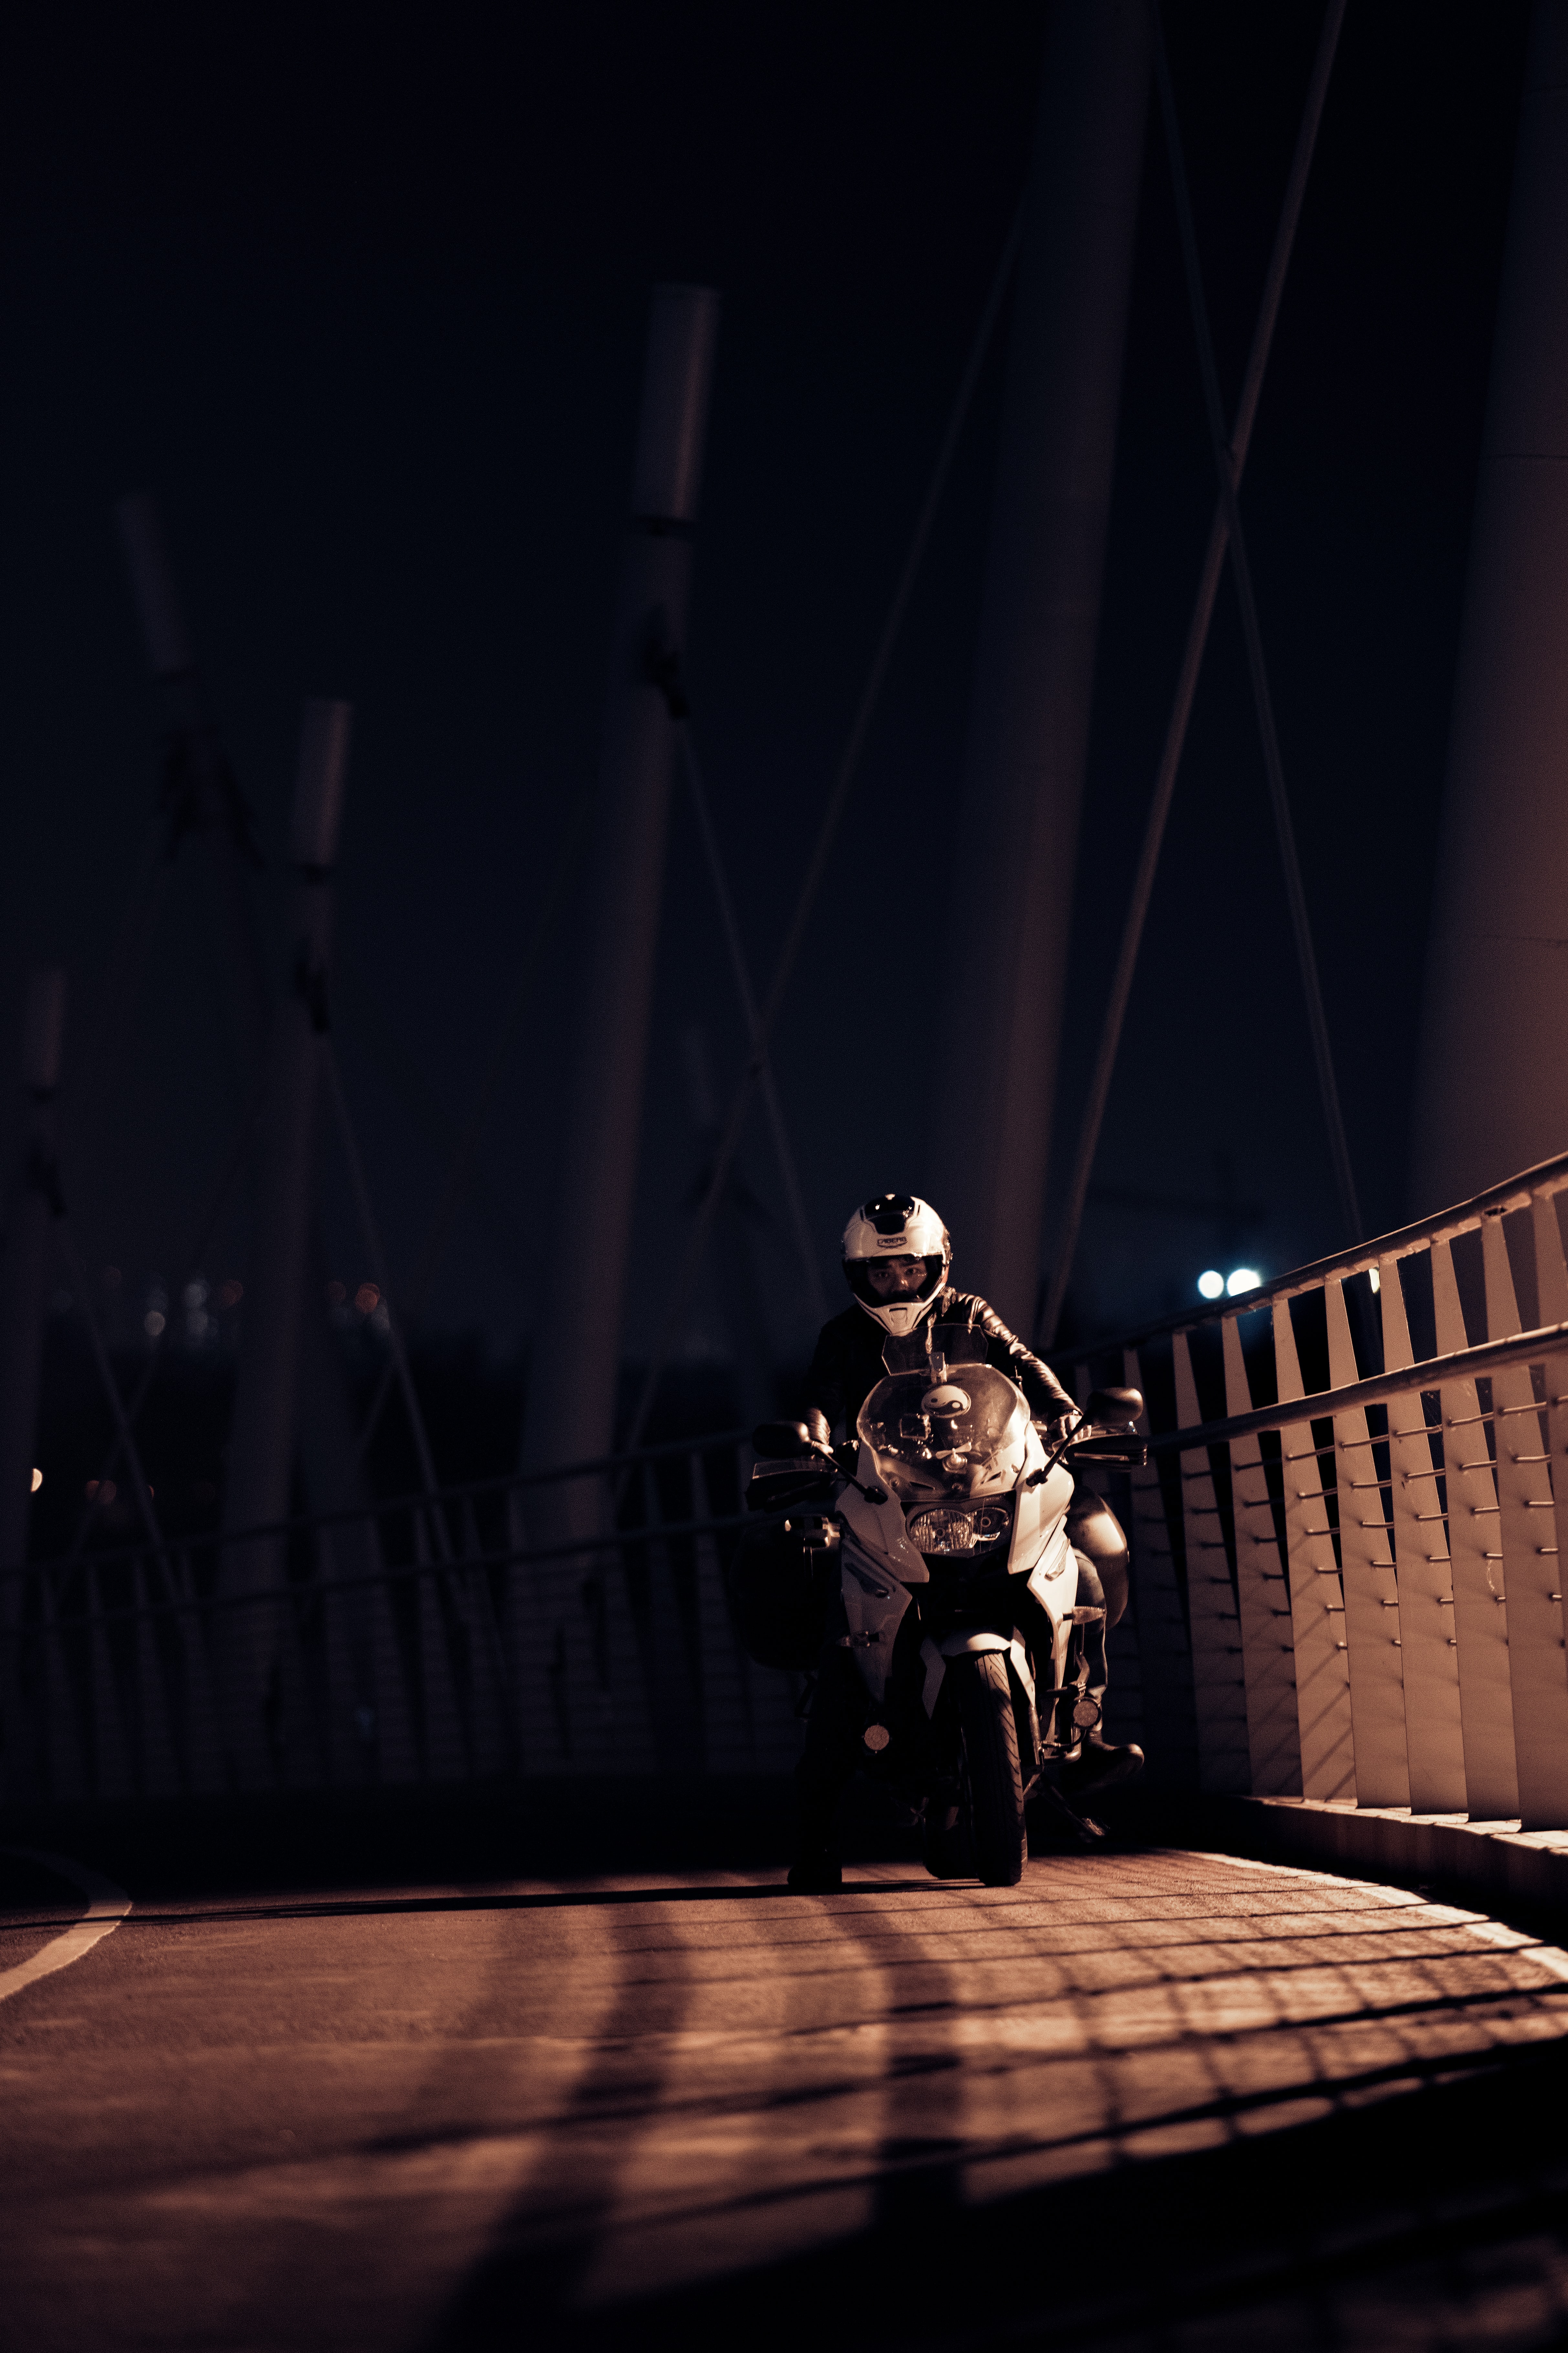 night, motorcycles, motorcyclist, helmet, motorcycle Desktop home screen Wallpaper